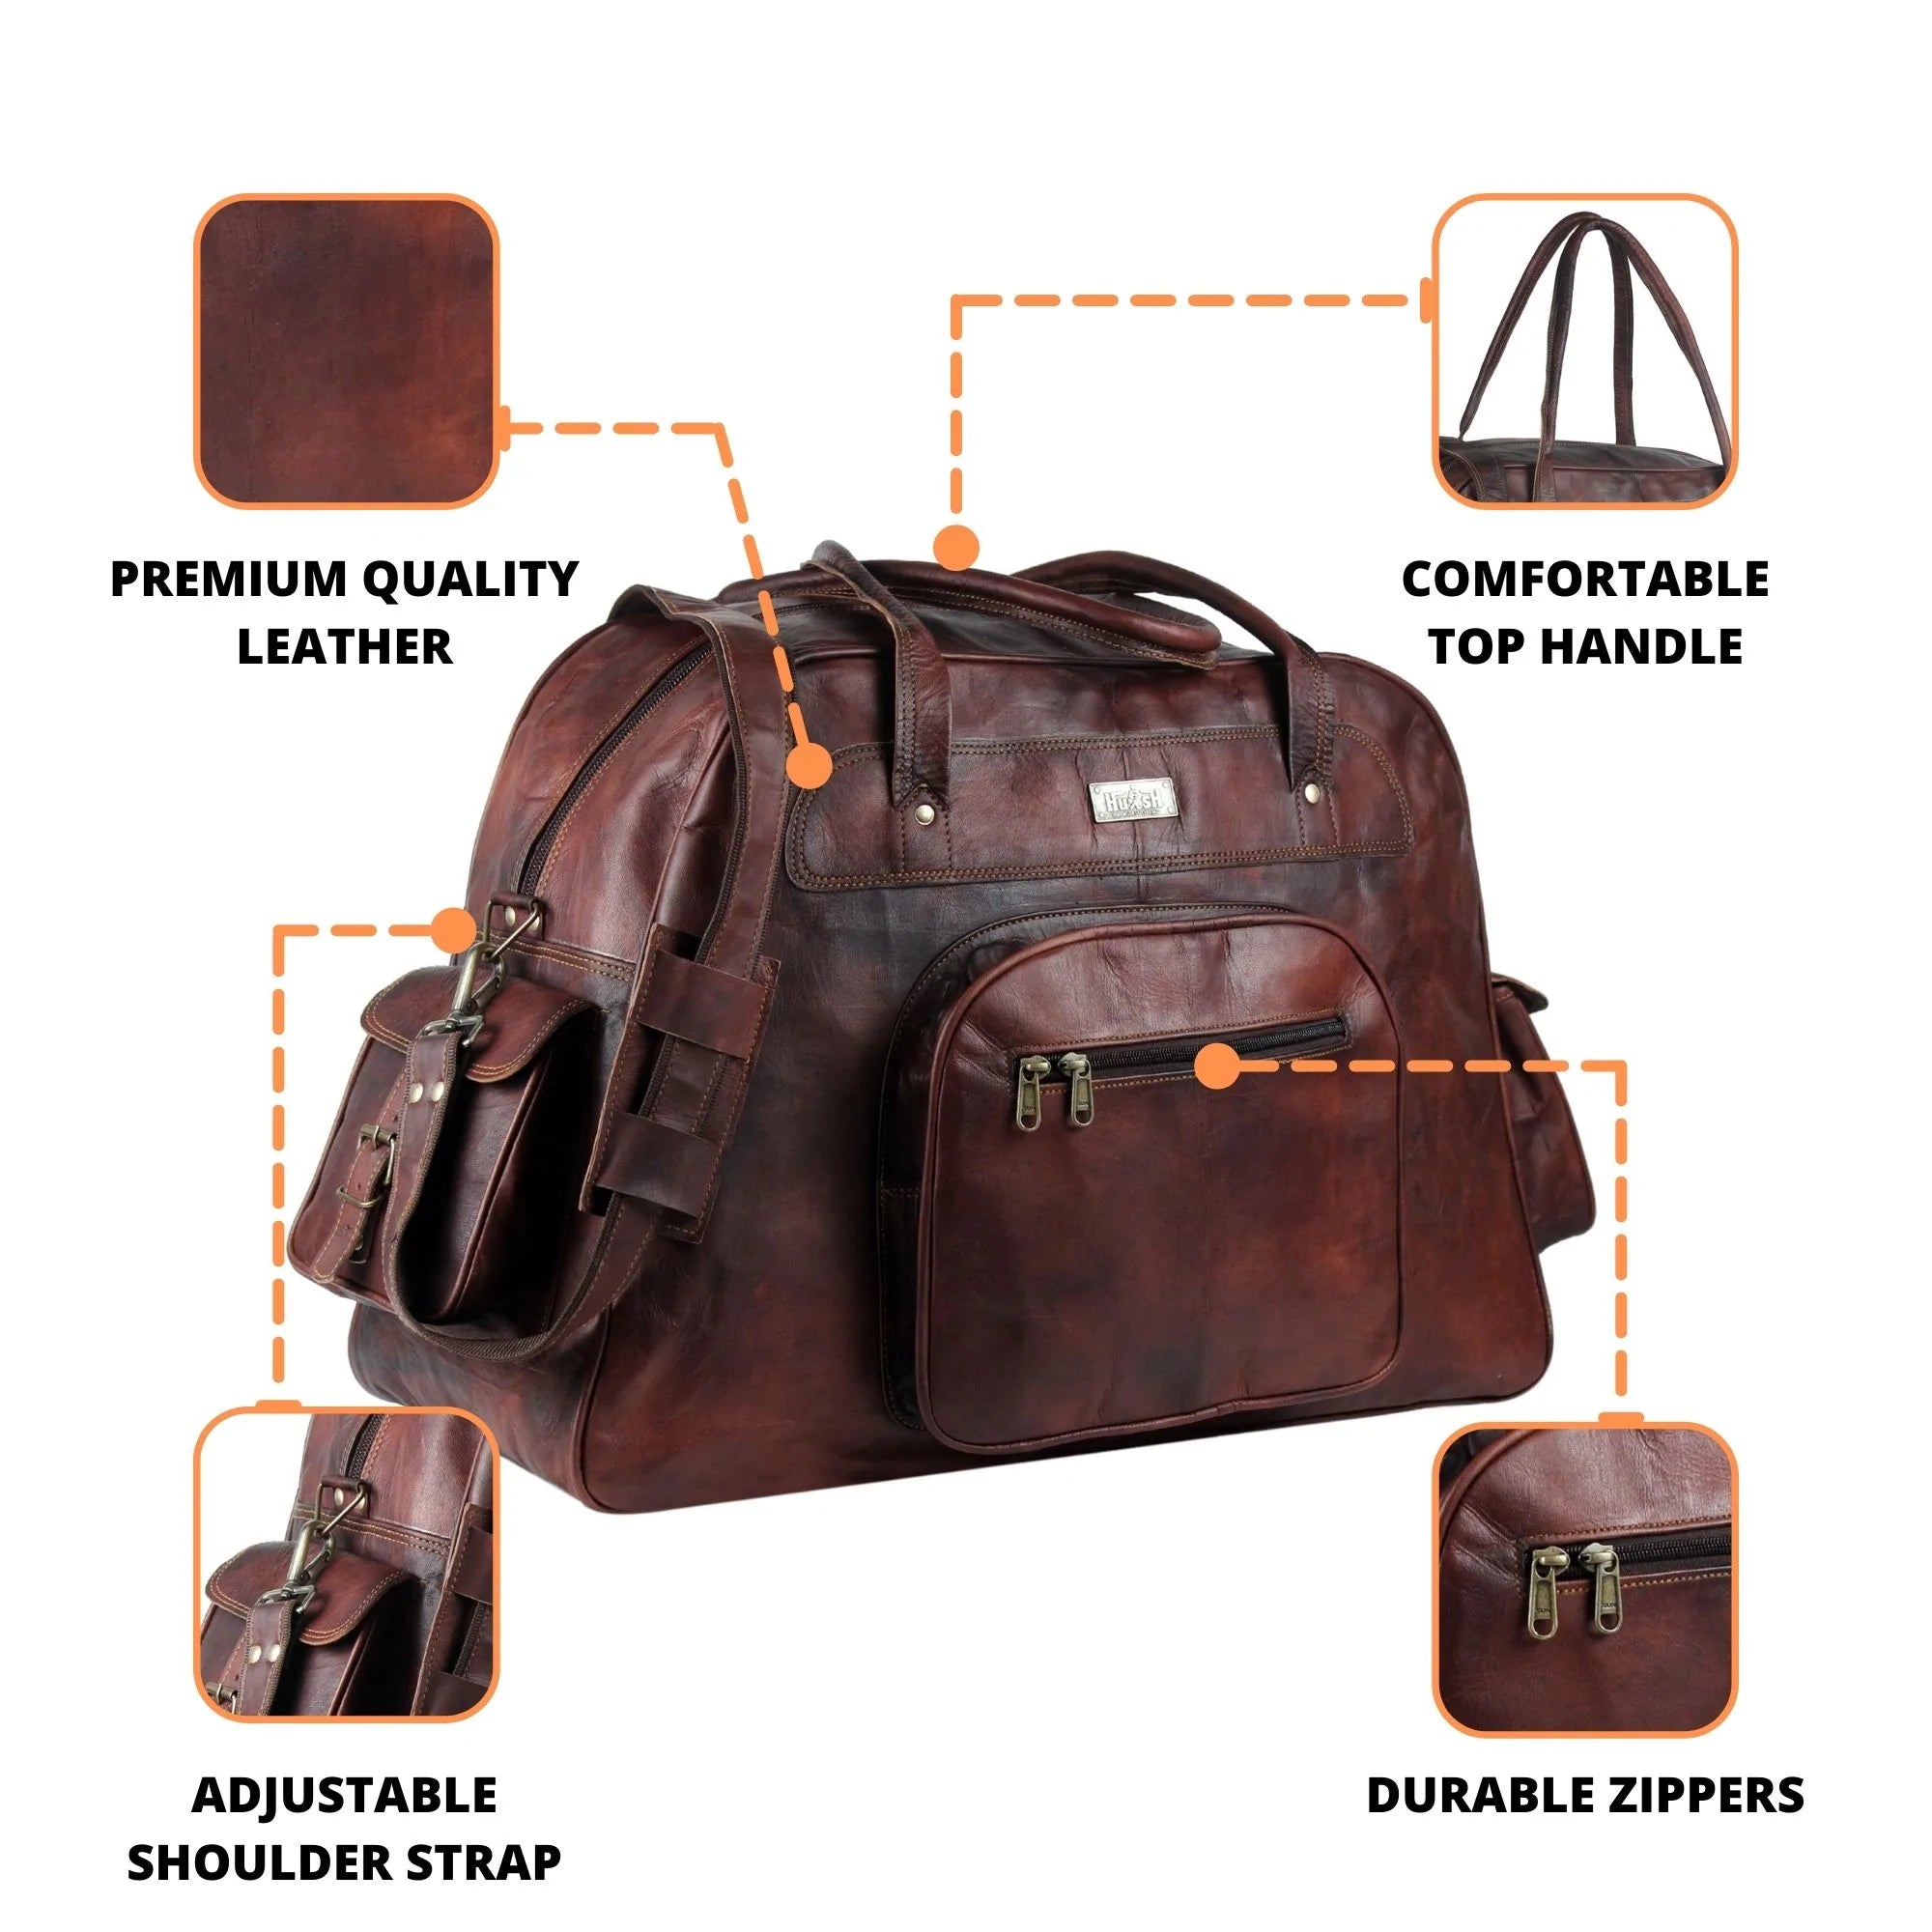 Brown Mini Duffle Bag